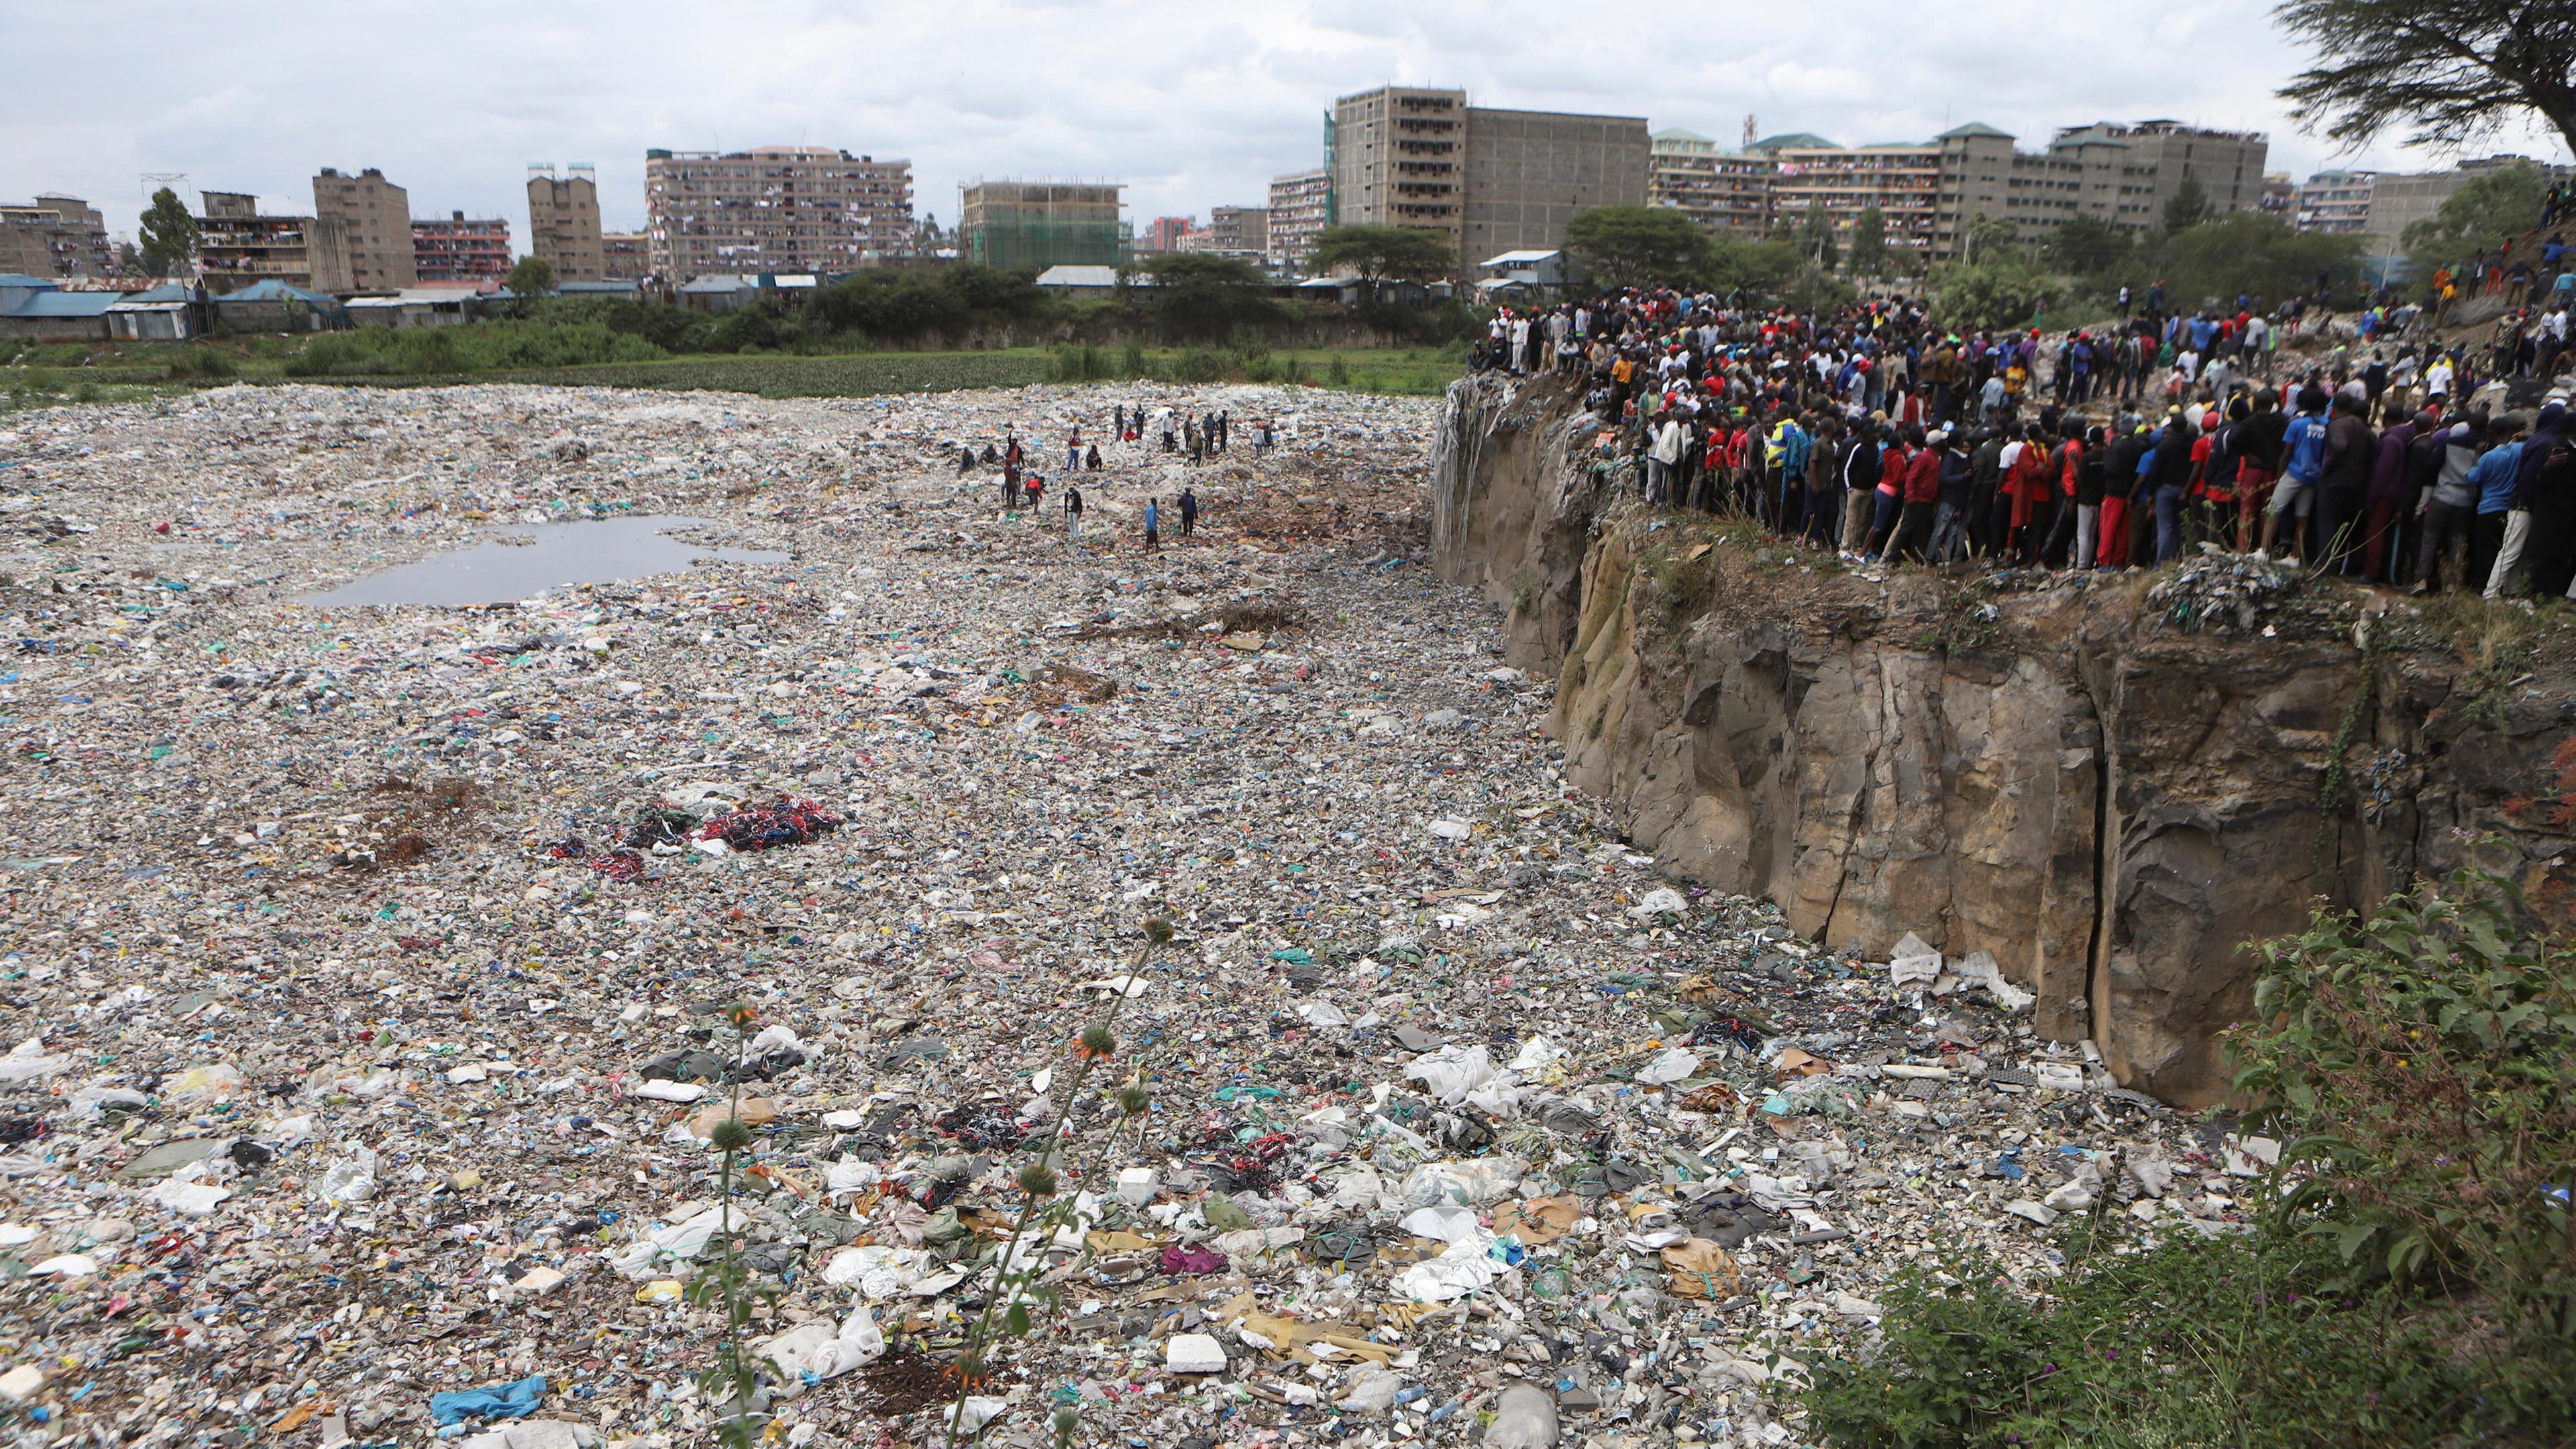 Kenia, Nairobi: Menschen beobachten vom Rand eines Steinbruchs aus, in dem menschliche Überreste im Gebiet Mukuru kwa Njenga gefunden wurden.